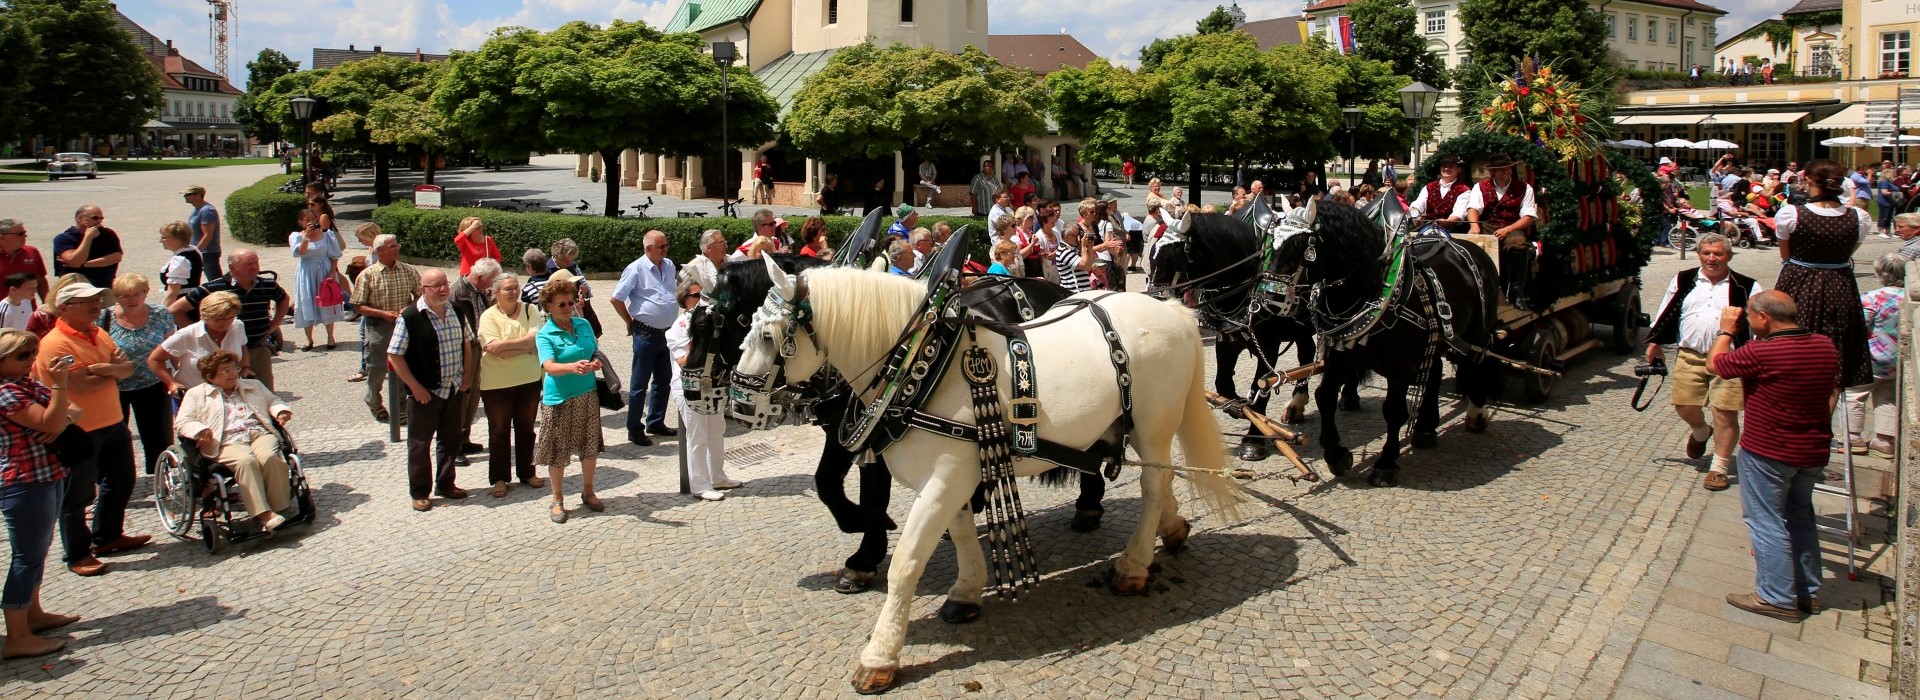 Eine Pferdekutsche mit Bierfässern zum Dultauszug der Altöttinger Hofdult.